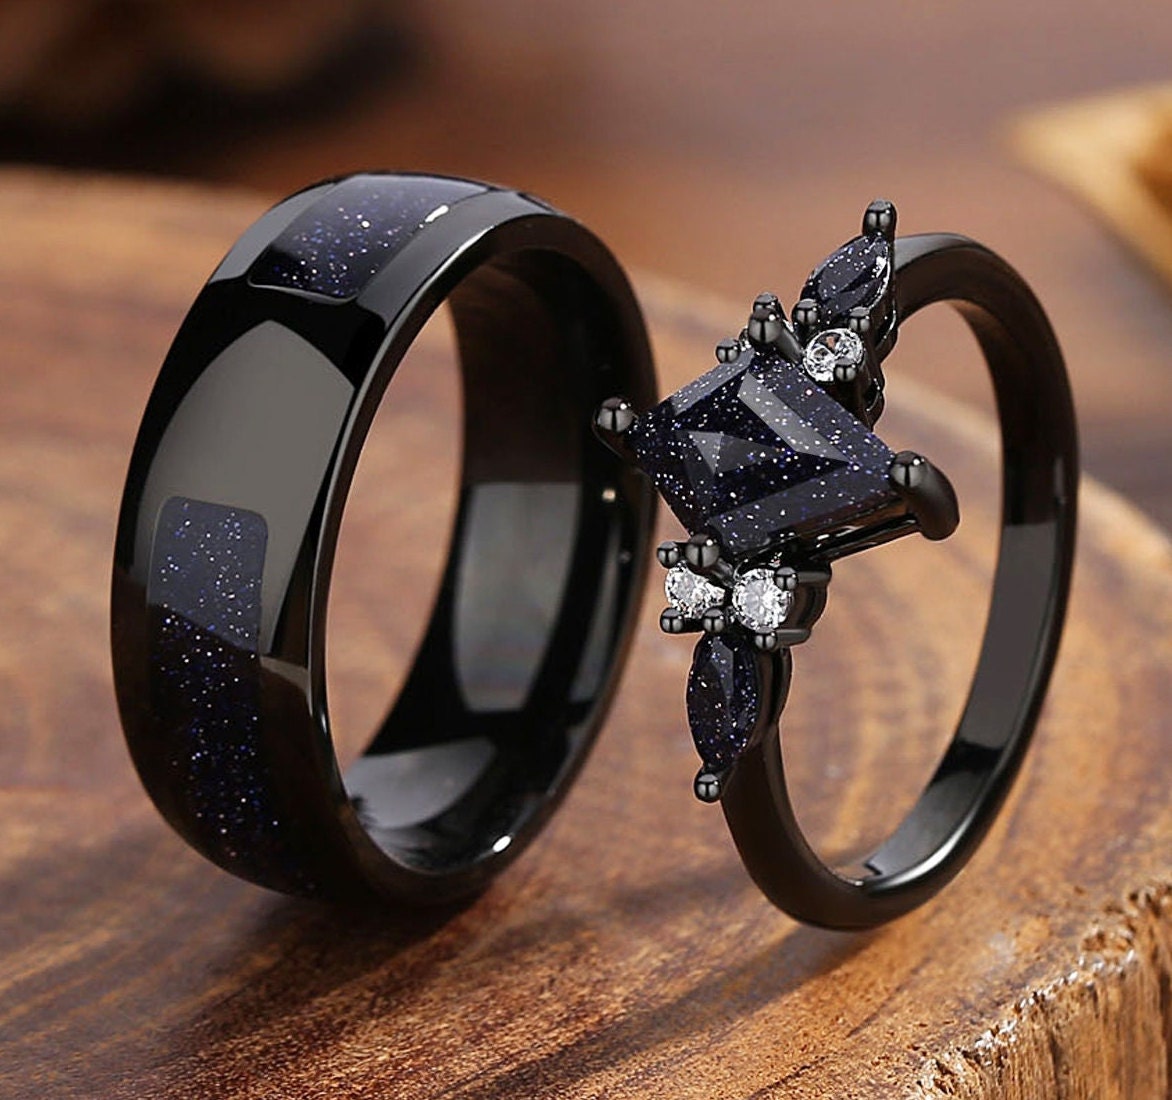 Buy Men's Wedding Ring Black Meteorite Ring Black Hammered Mens Ring  Meteorite Men's Wedding Band Tungsten Ring Kent Online in India - Etsy